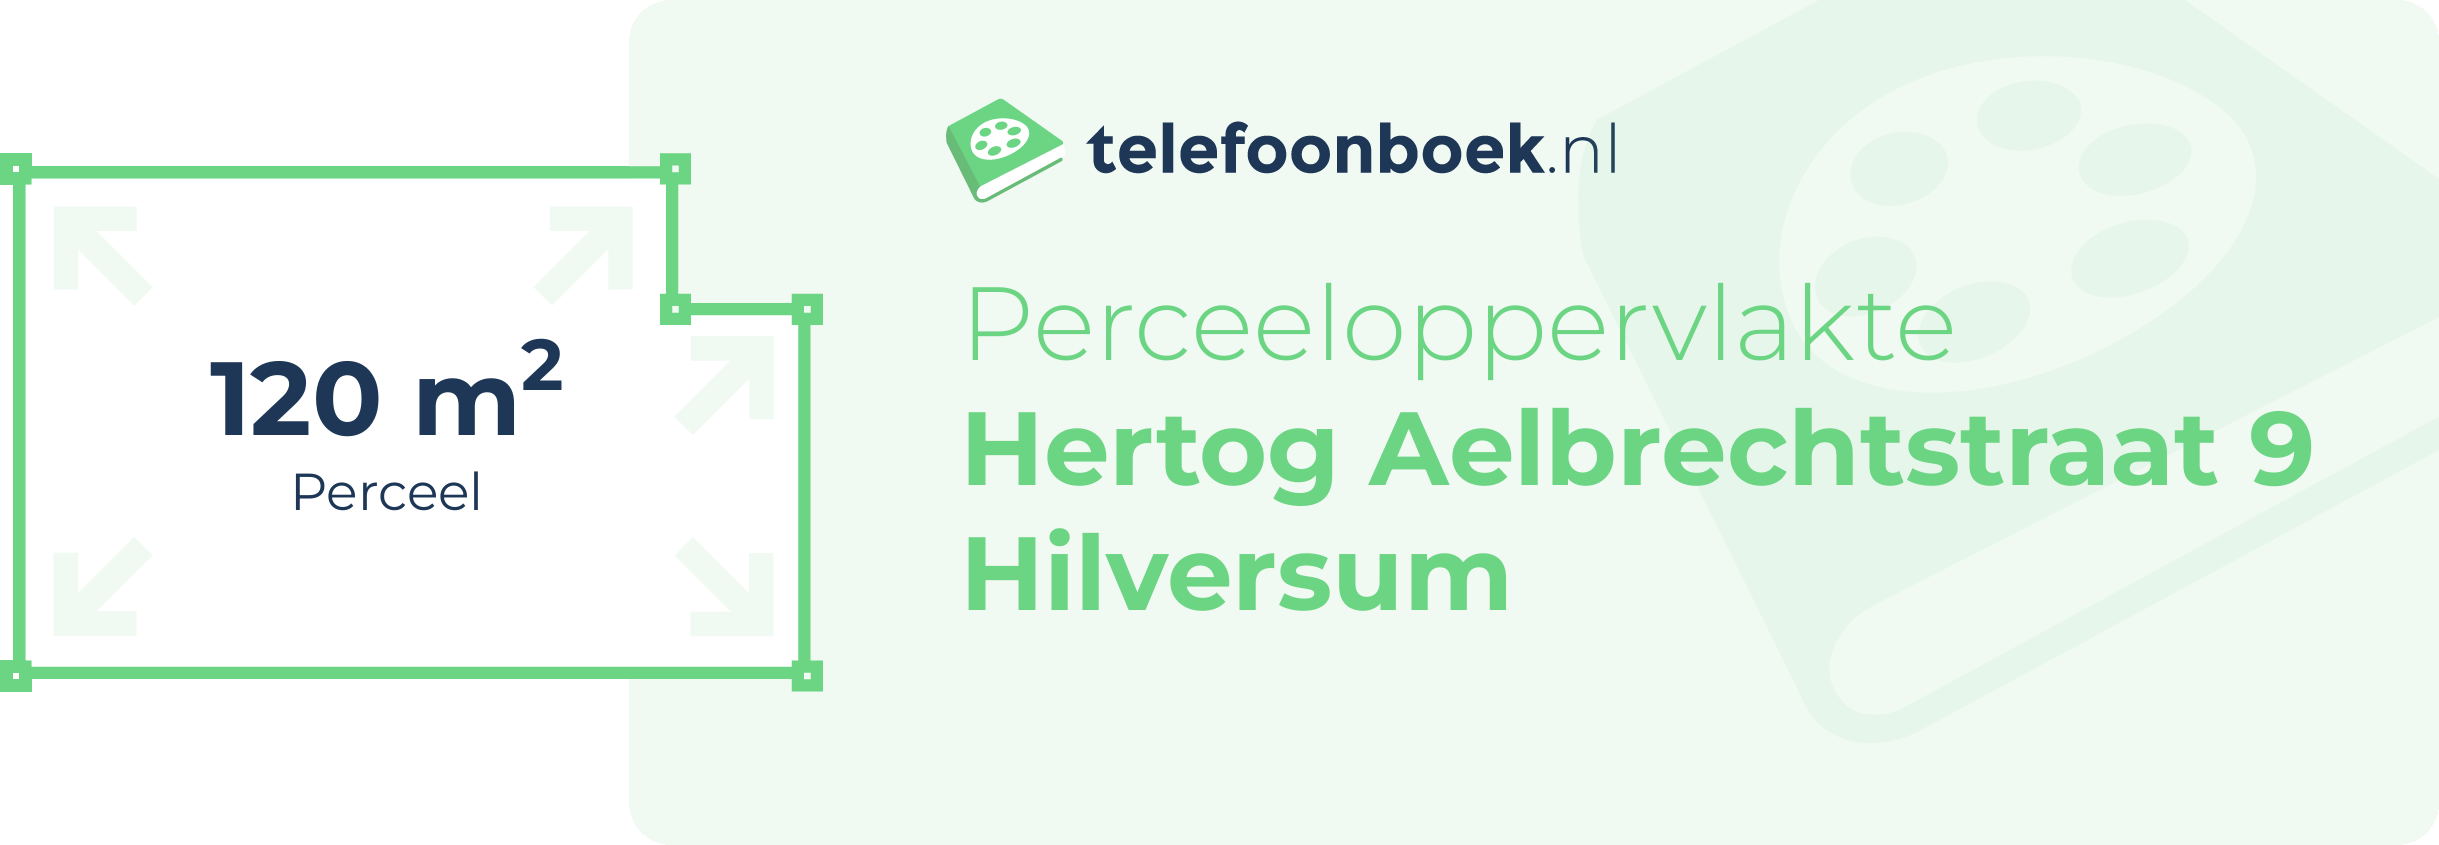 Perceeloppervlakte Hertog Aelbrechtstraat 9 Hilversum